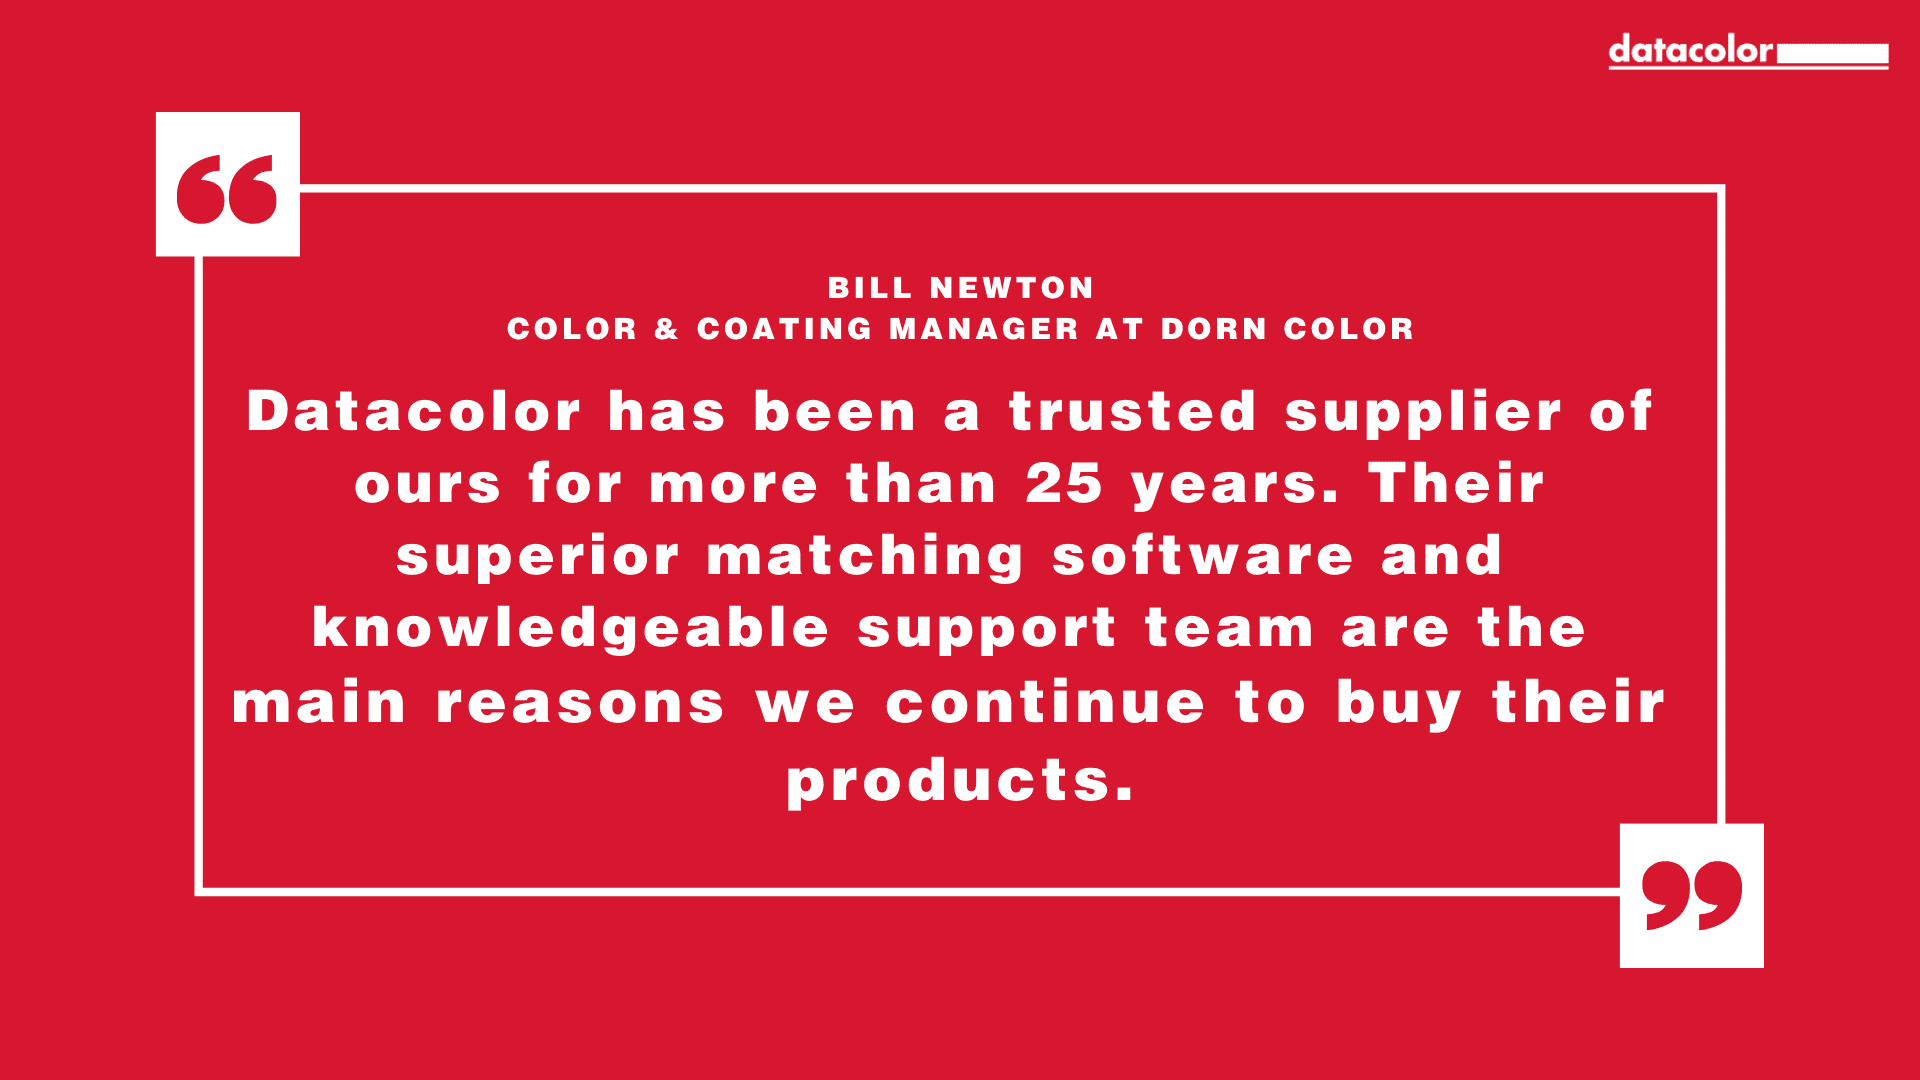 Cita de Bill Newton, Director de Color y Recubrimientos de Dorn Color